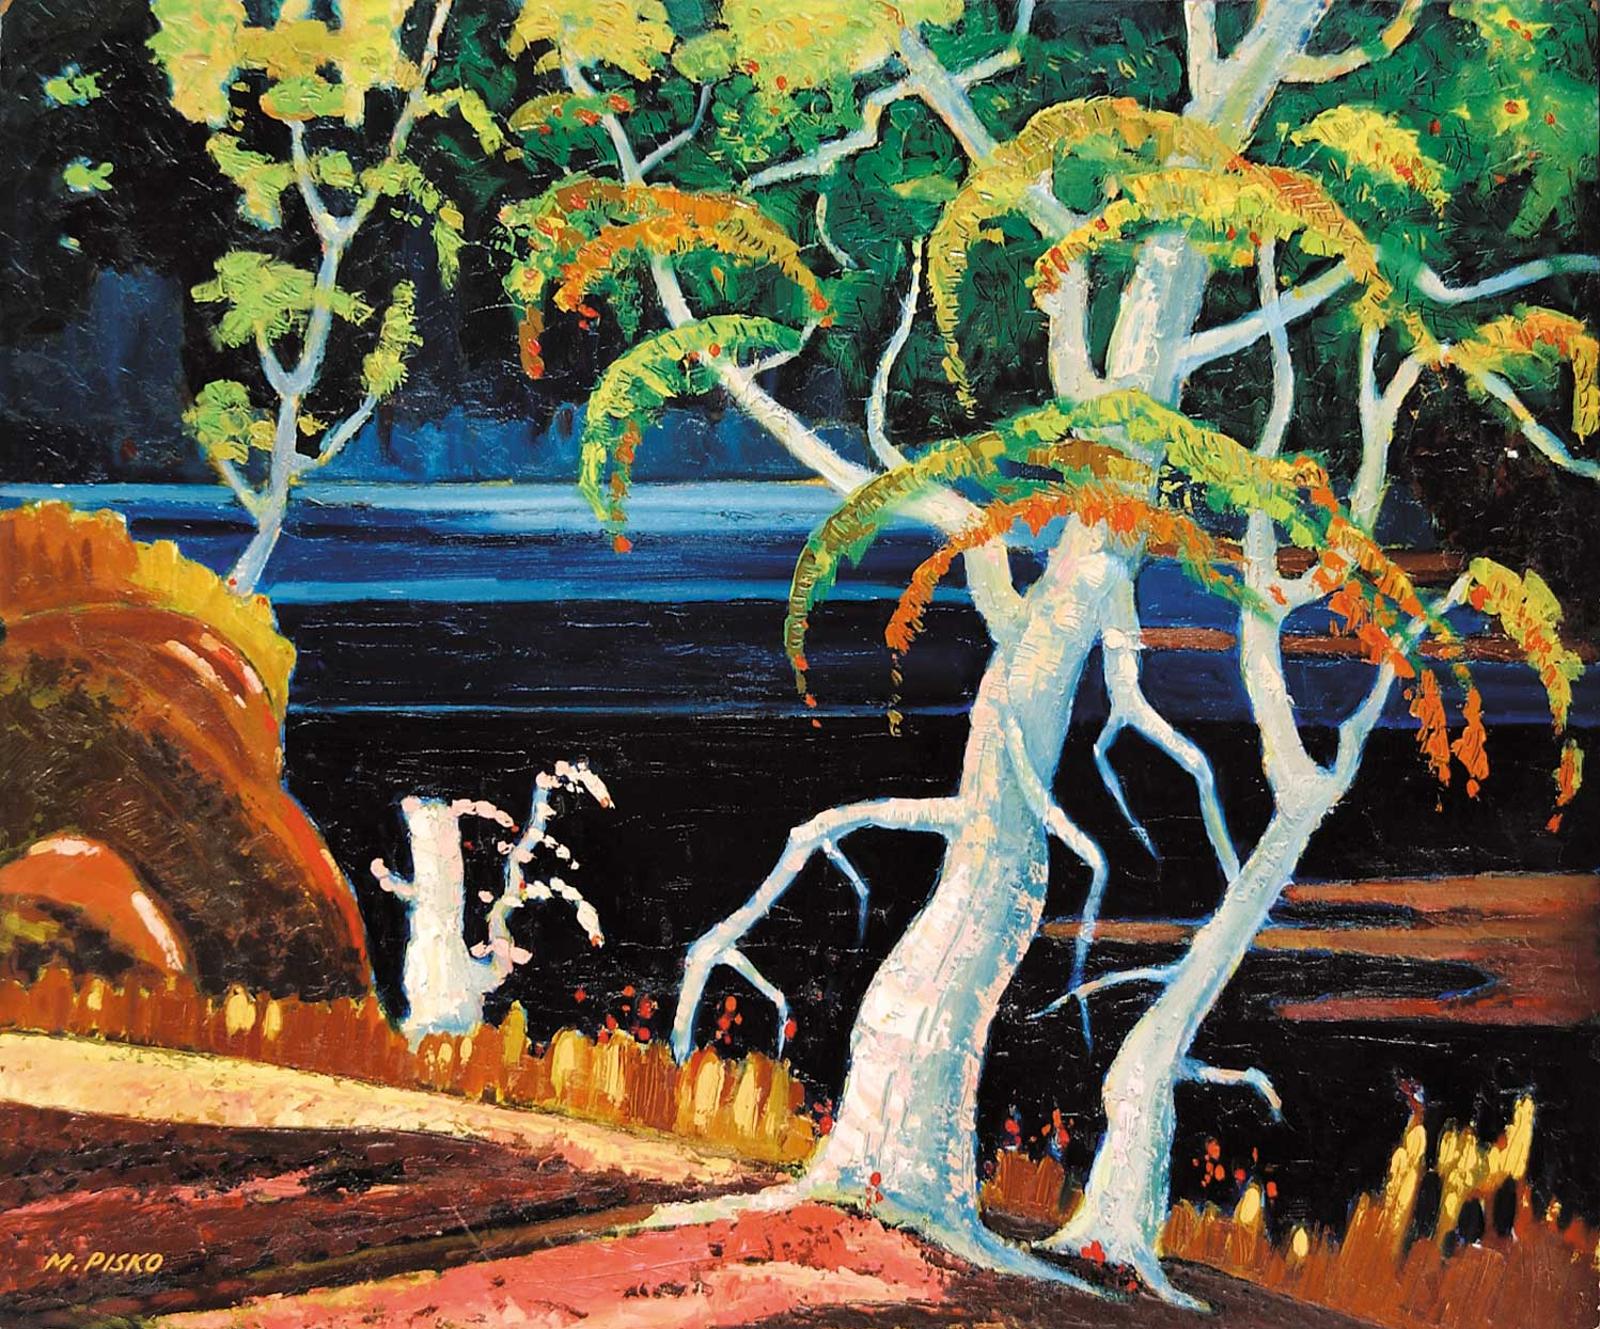 Michael Pisko (1913-1999) - Untitled - Colourful Landscape